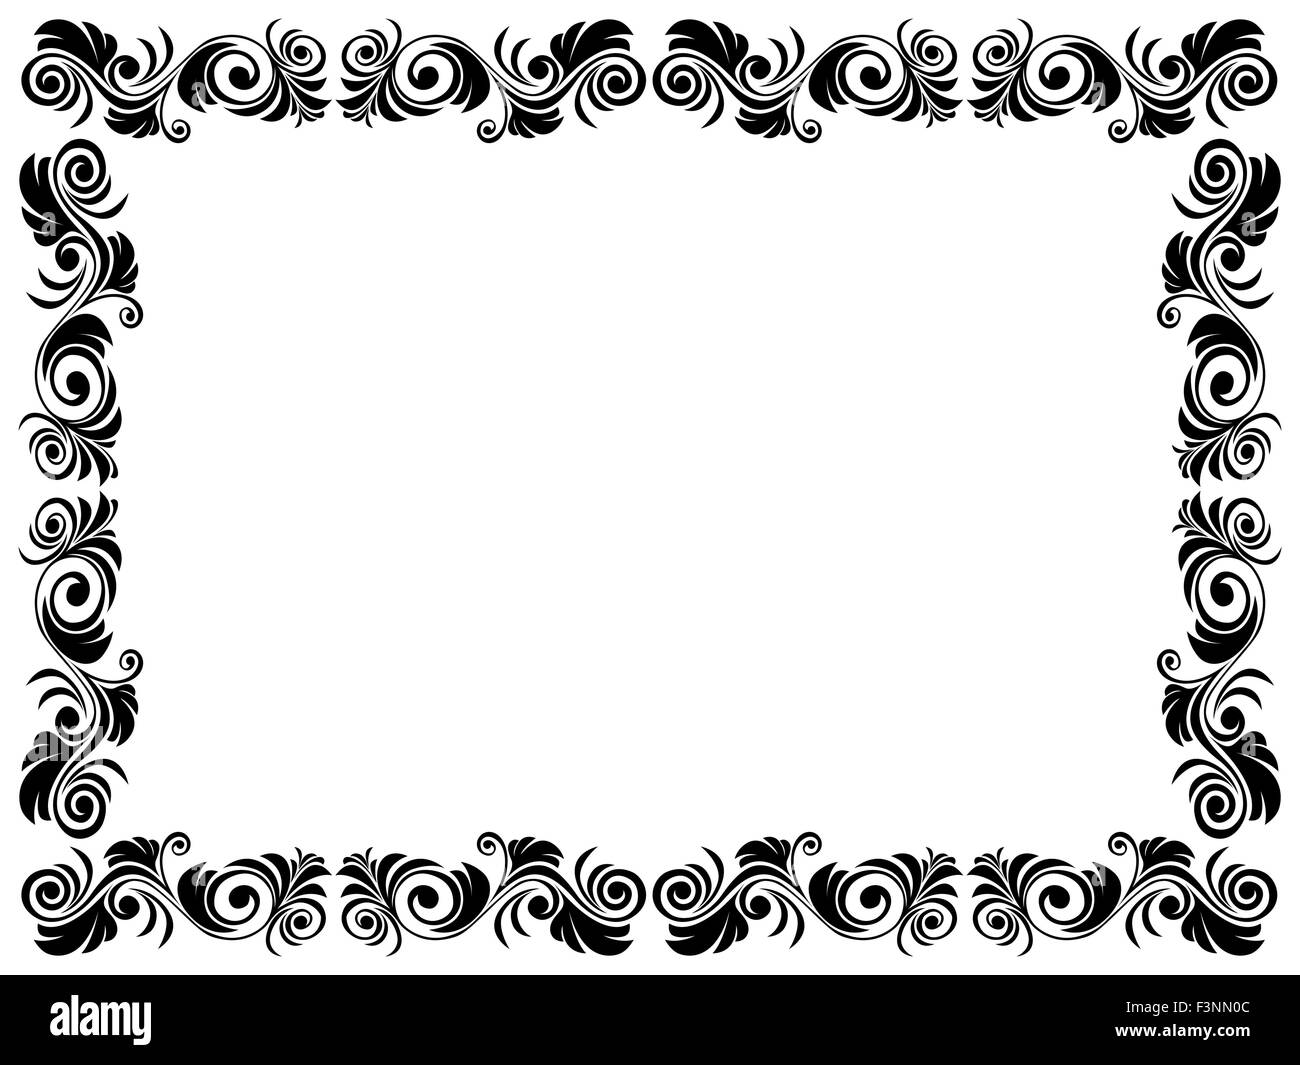 Cadre noir et blanc de blancs avec des éléments floraux, dessin à la main  les images vectorielles Image Vectorielle Stock - Alamy